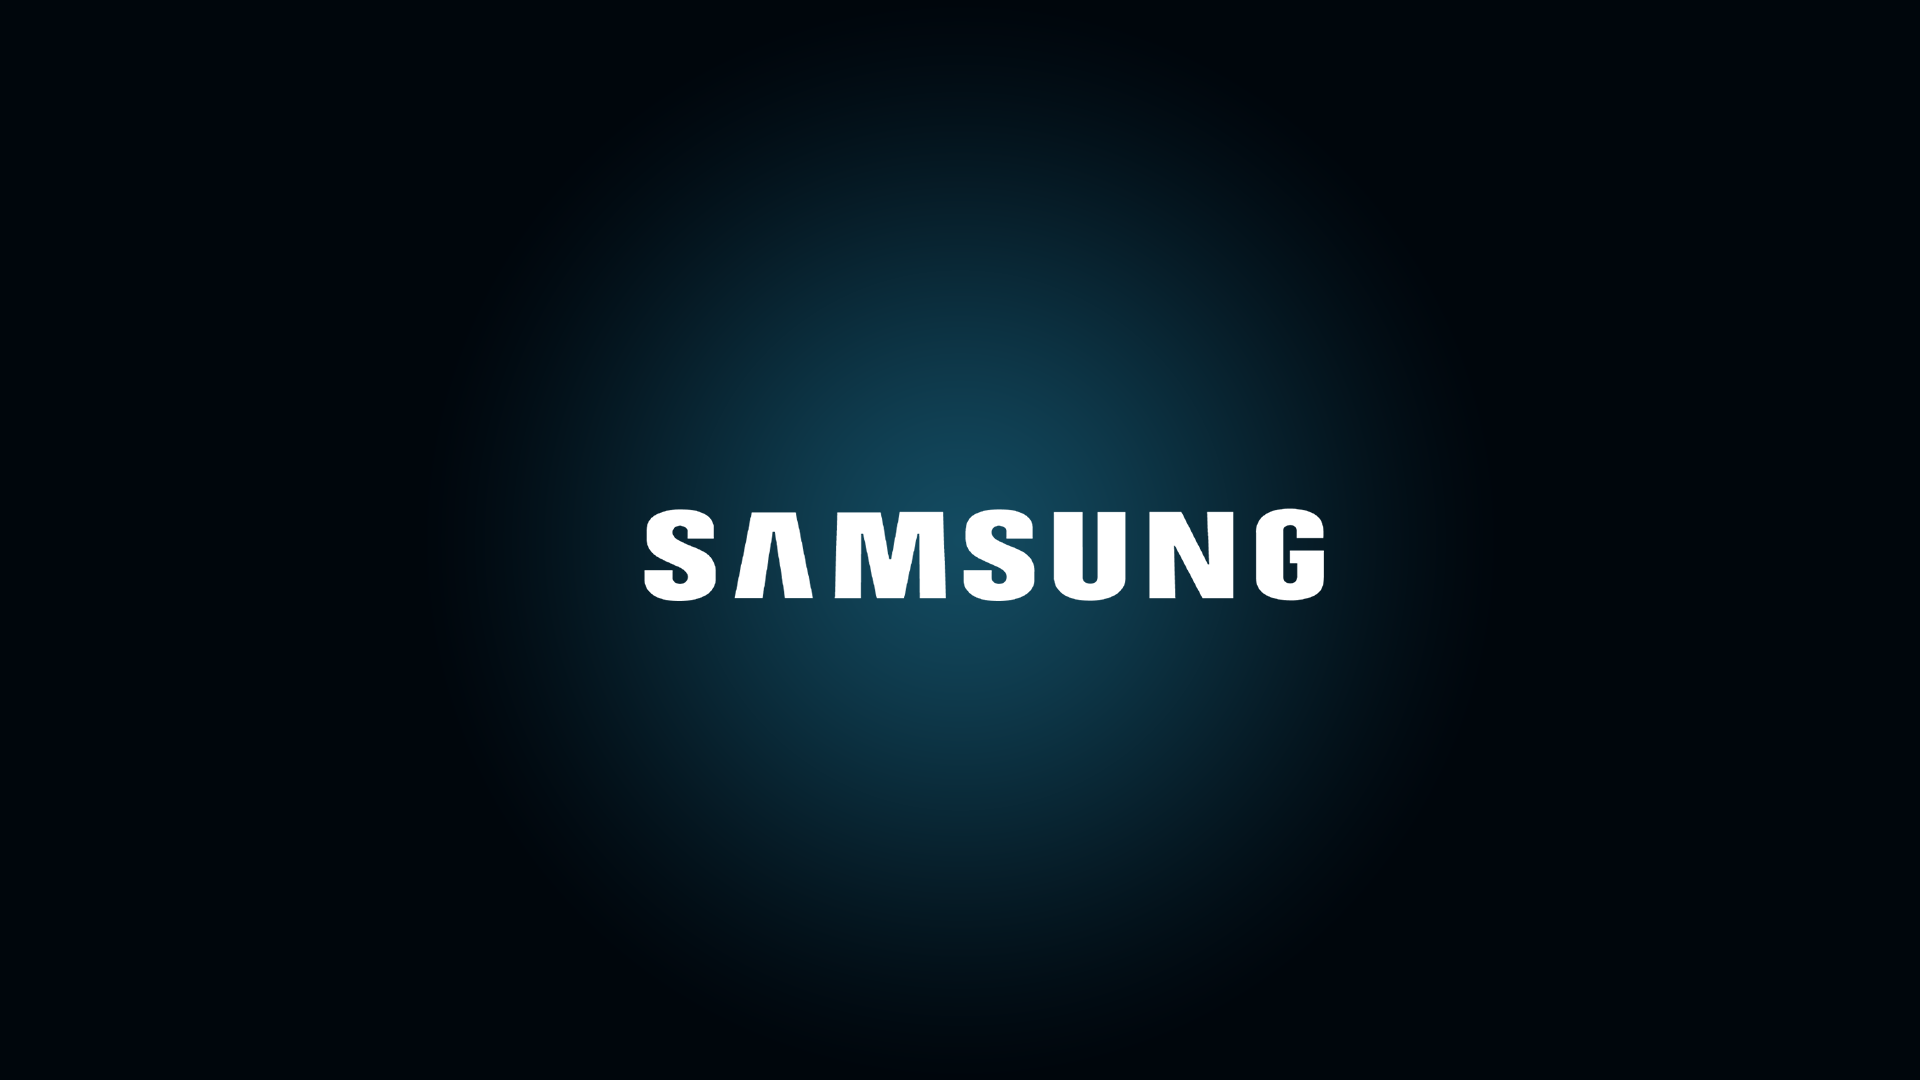 HD Samsung Wallpapers - WallpaperSafari